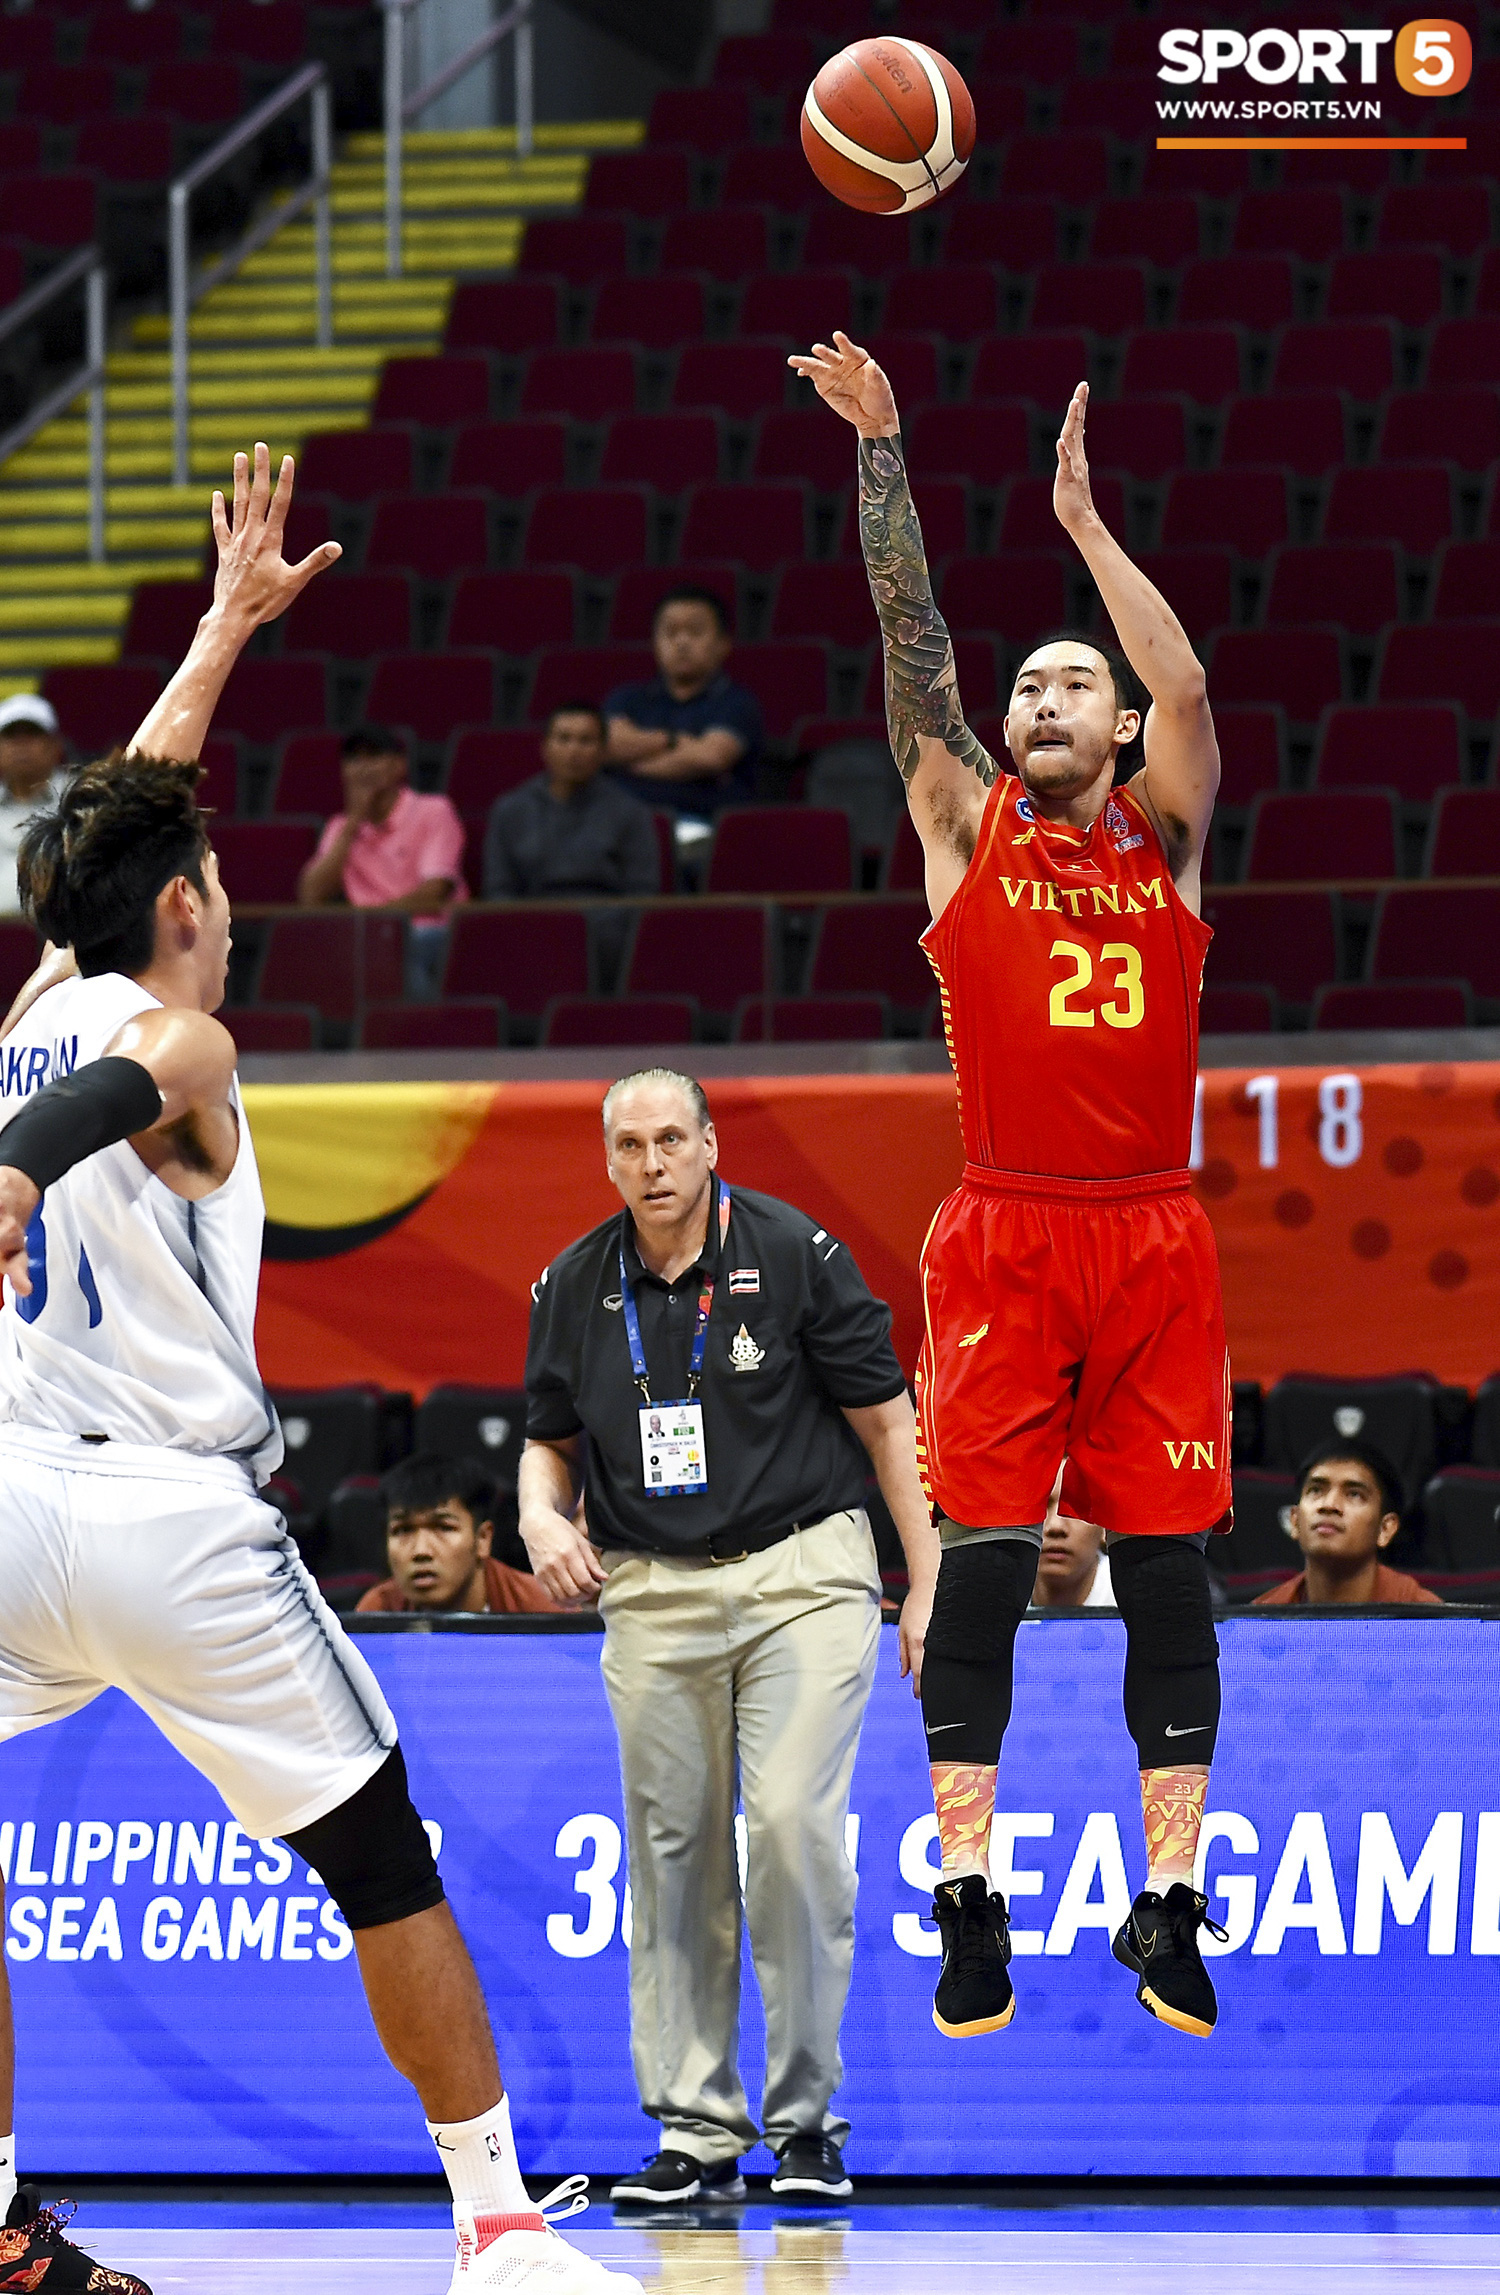 Tan giấc mộng vàng ở SEA Games 30, tuyển bóng rổ Việt Nam hướng tới tấm huy chương đồng thứ 2 - Ảnh 2.